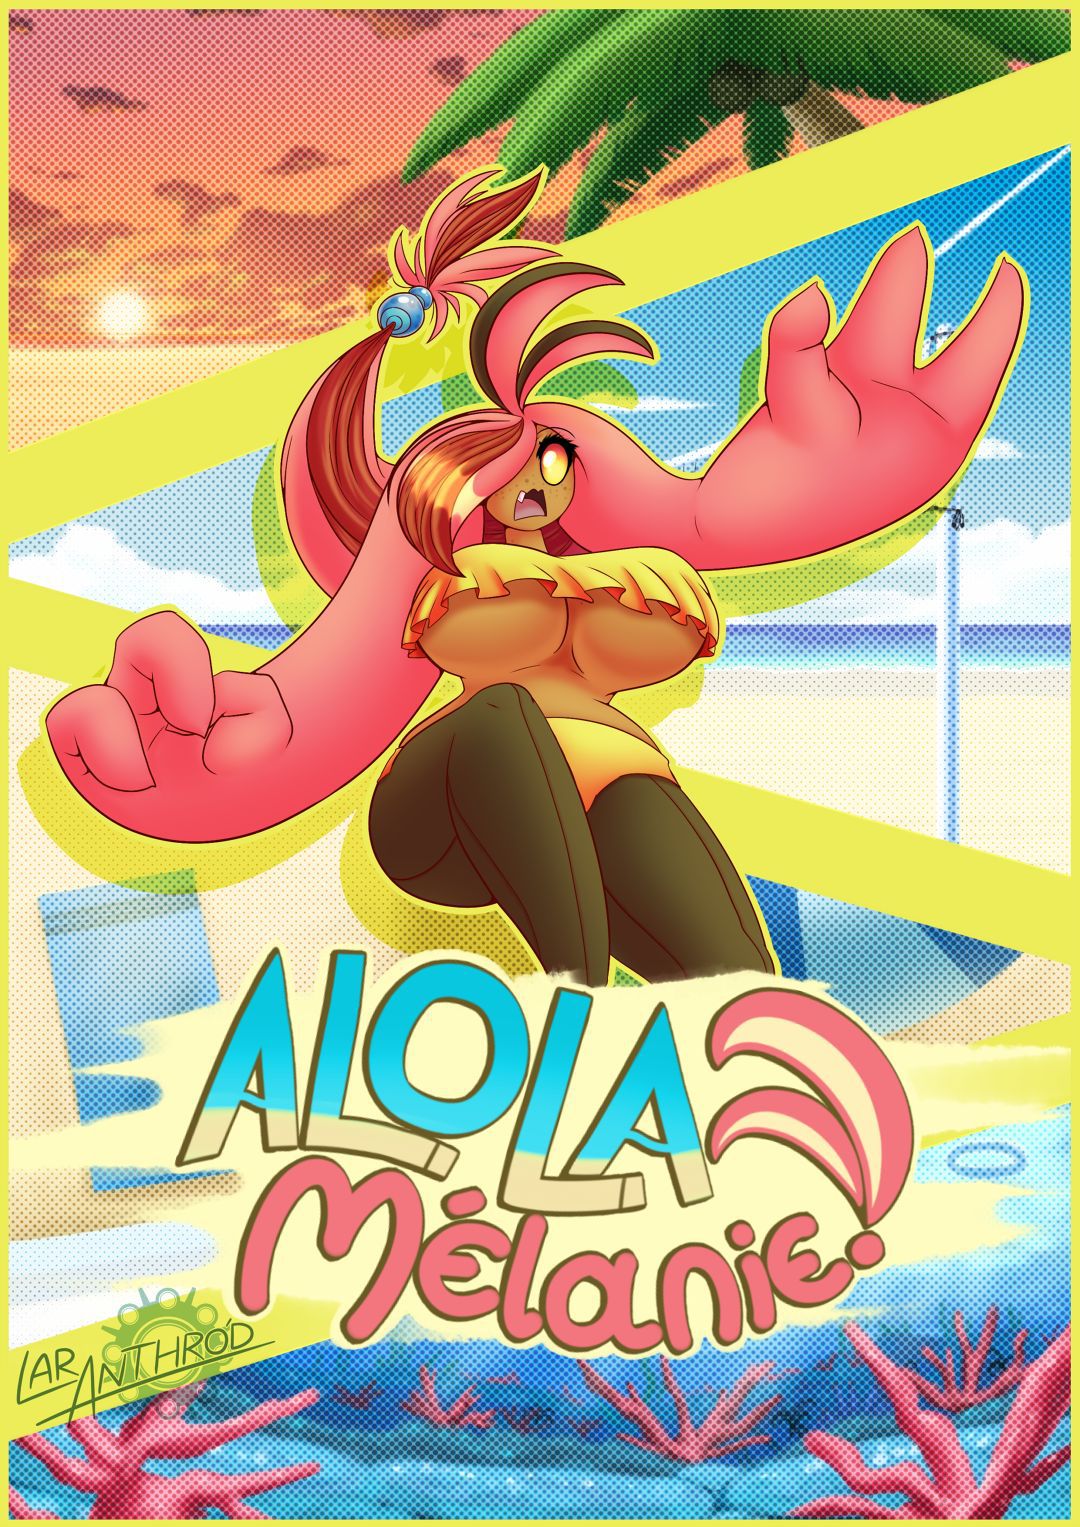 [Latiar010 (LarAnthrod)] Alola Melanie (Pokemon) Ongoing 1